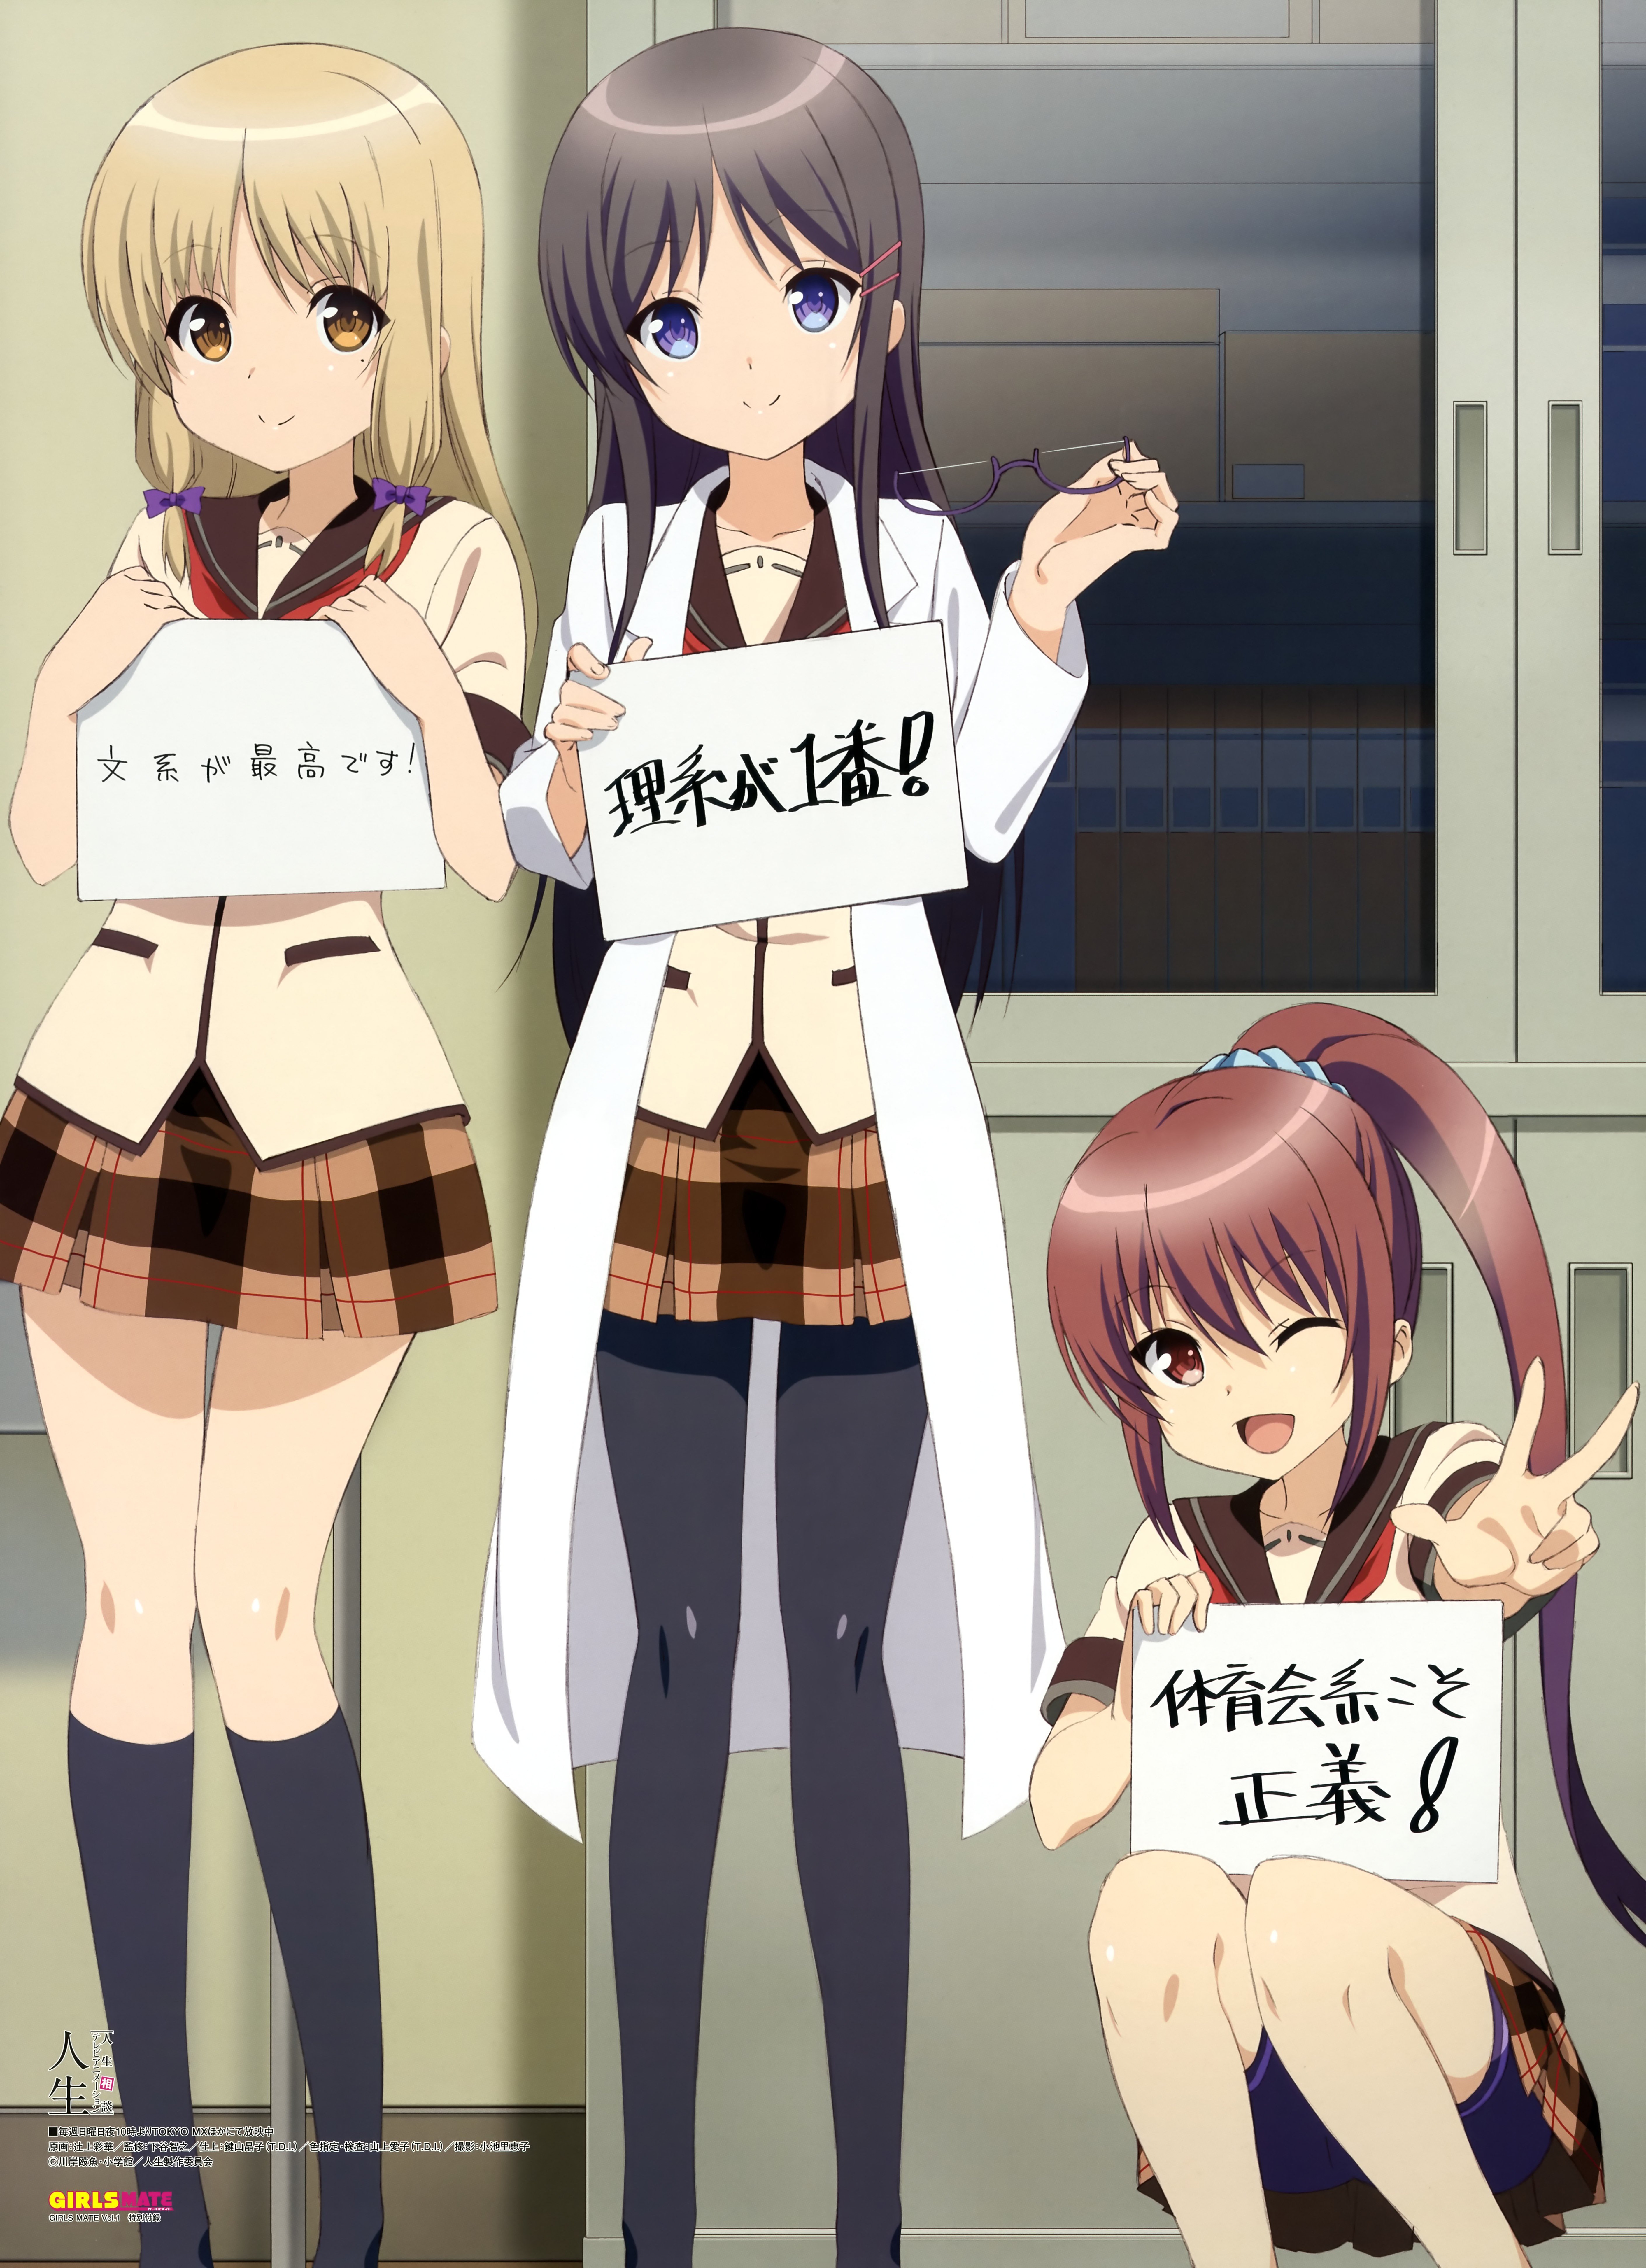 Jinsei, Anime girls, Endō Rino, Suzuki Ikumi, Kujō Fumi, Anime Wallpaper